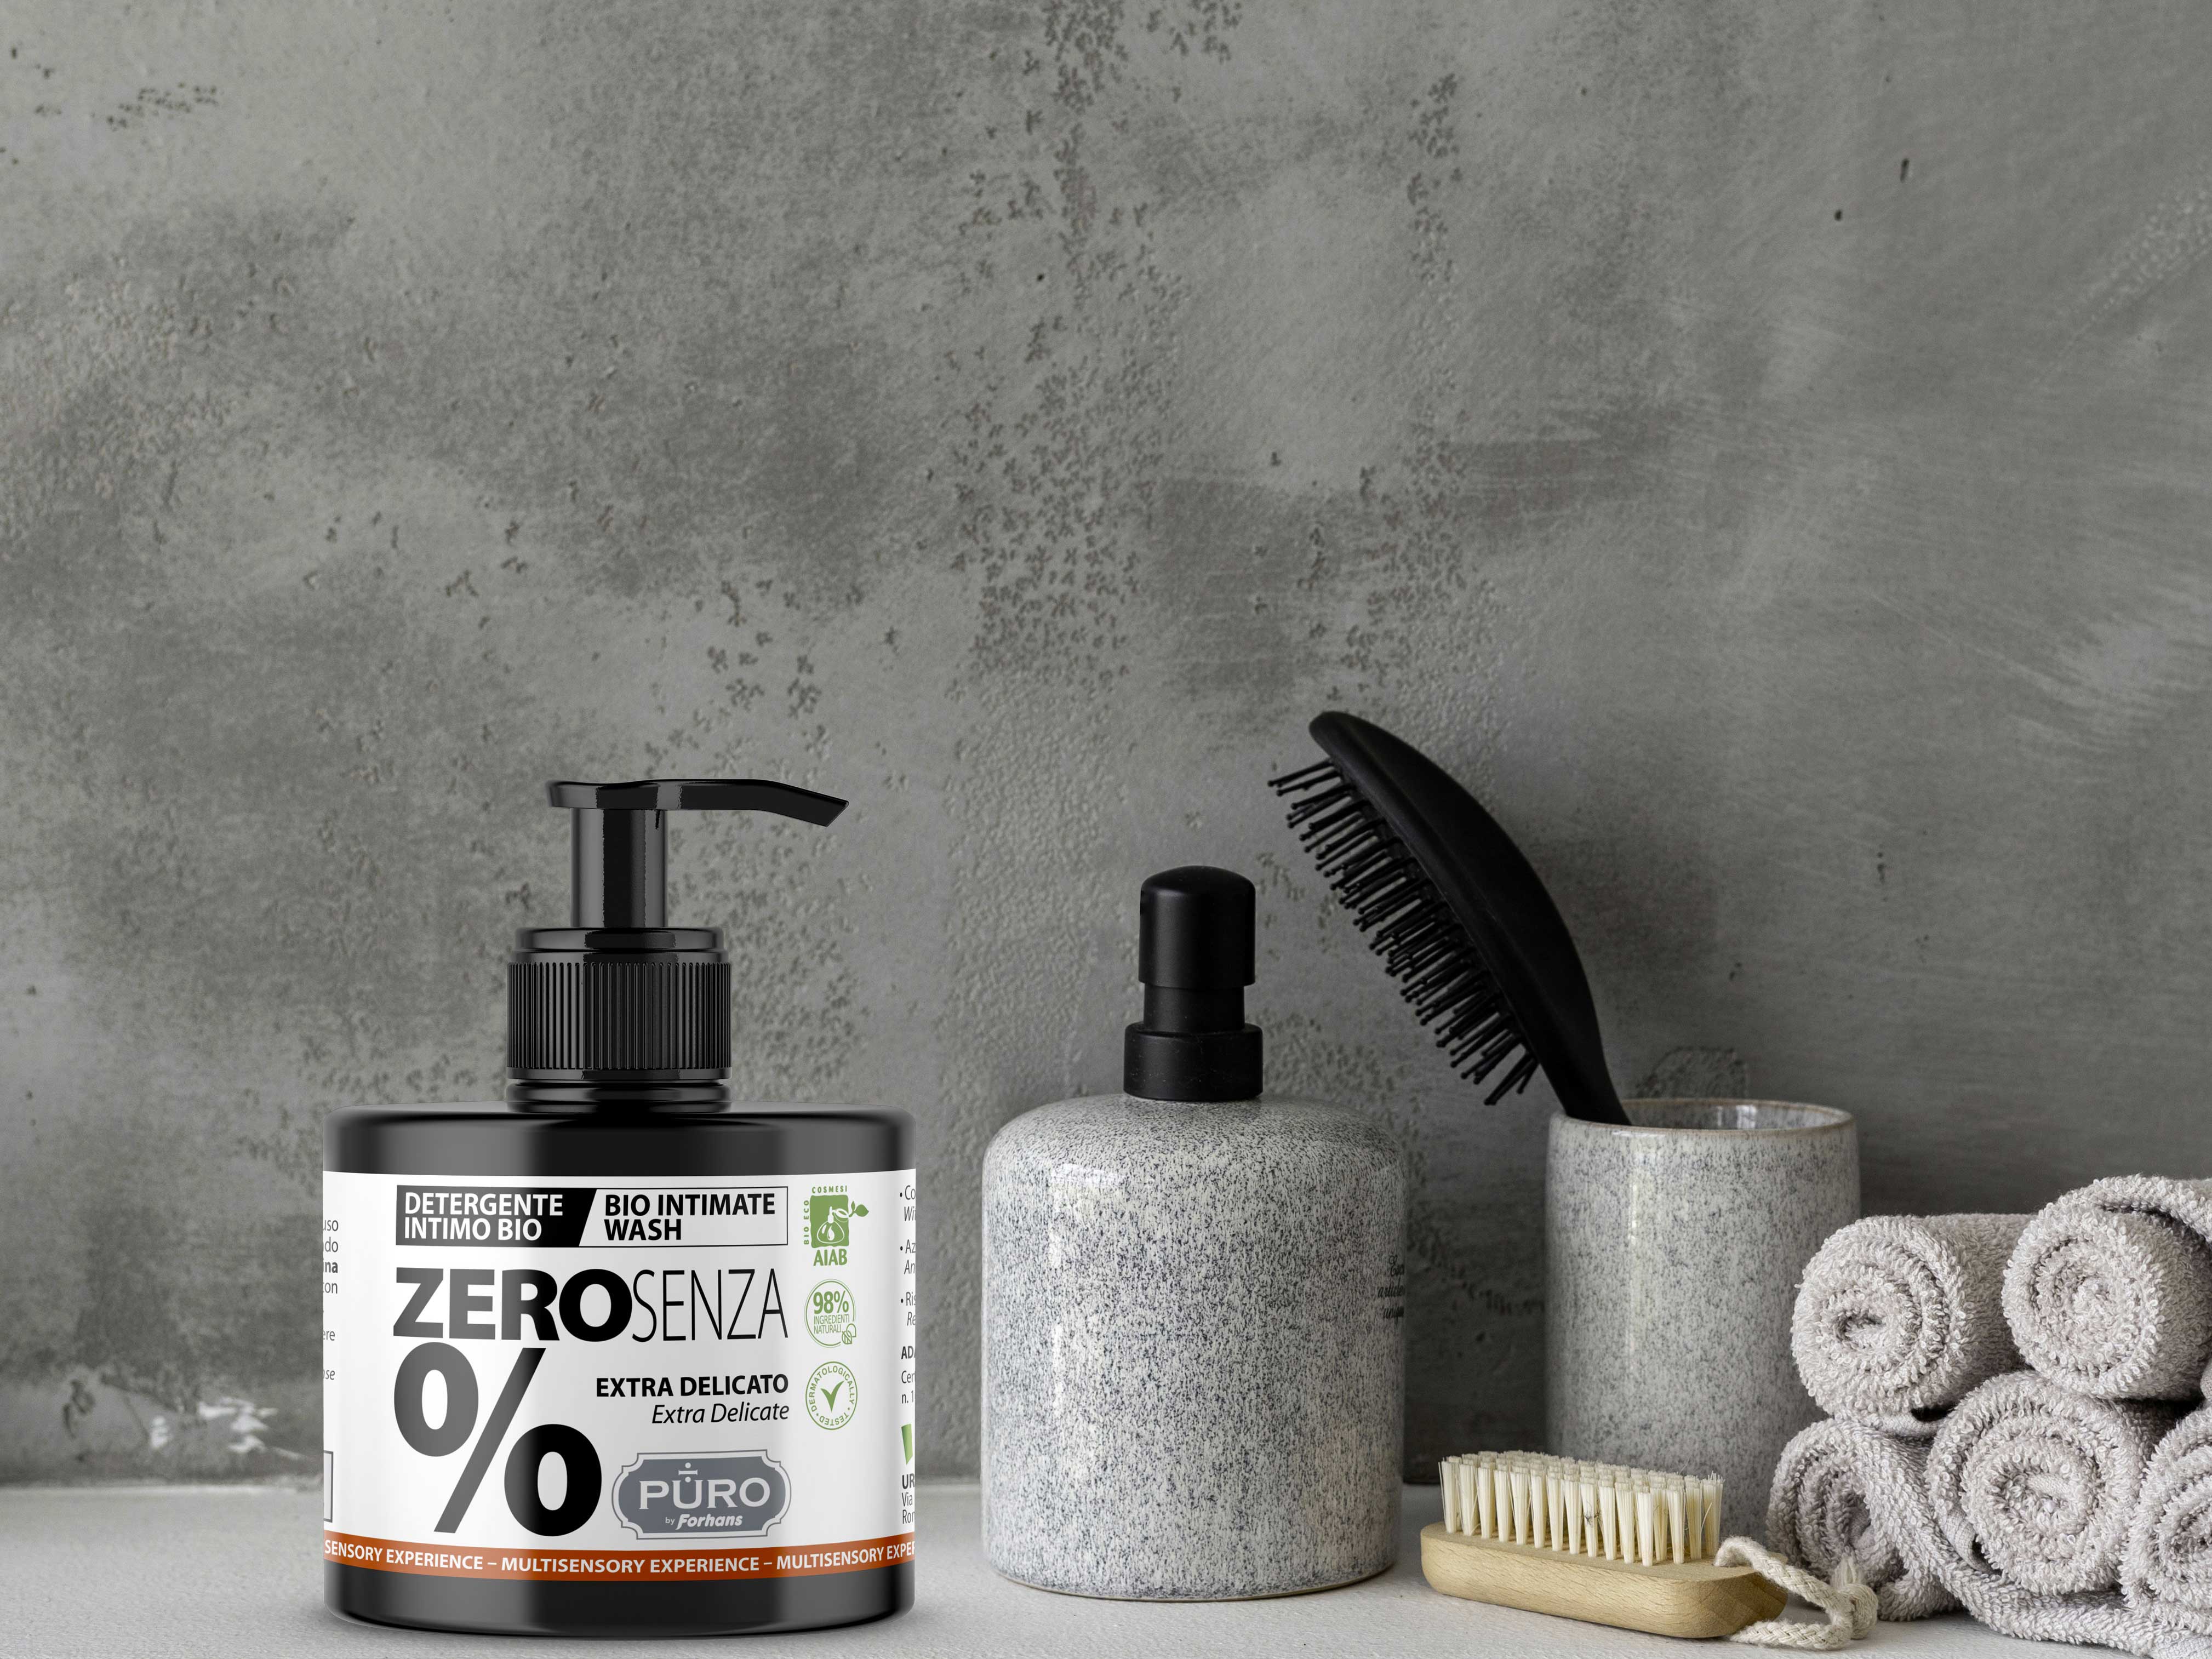 Foto 1 - Doccia Shampoo e Detergente Intimo a ingredienti naturali, la linea PURO Personal Care si amplia